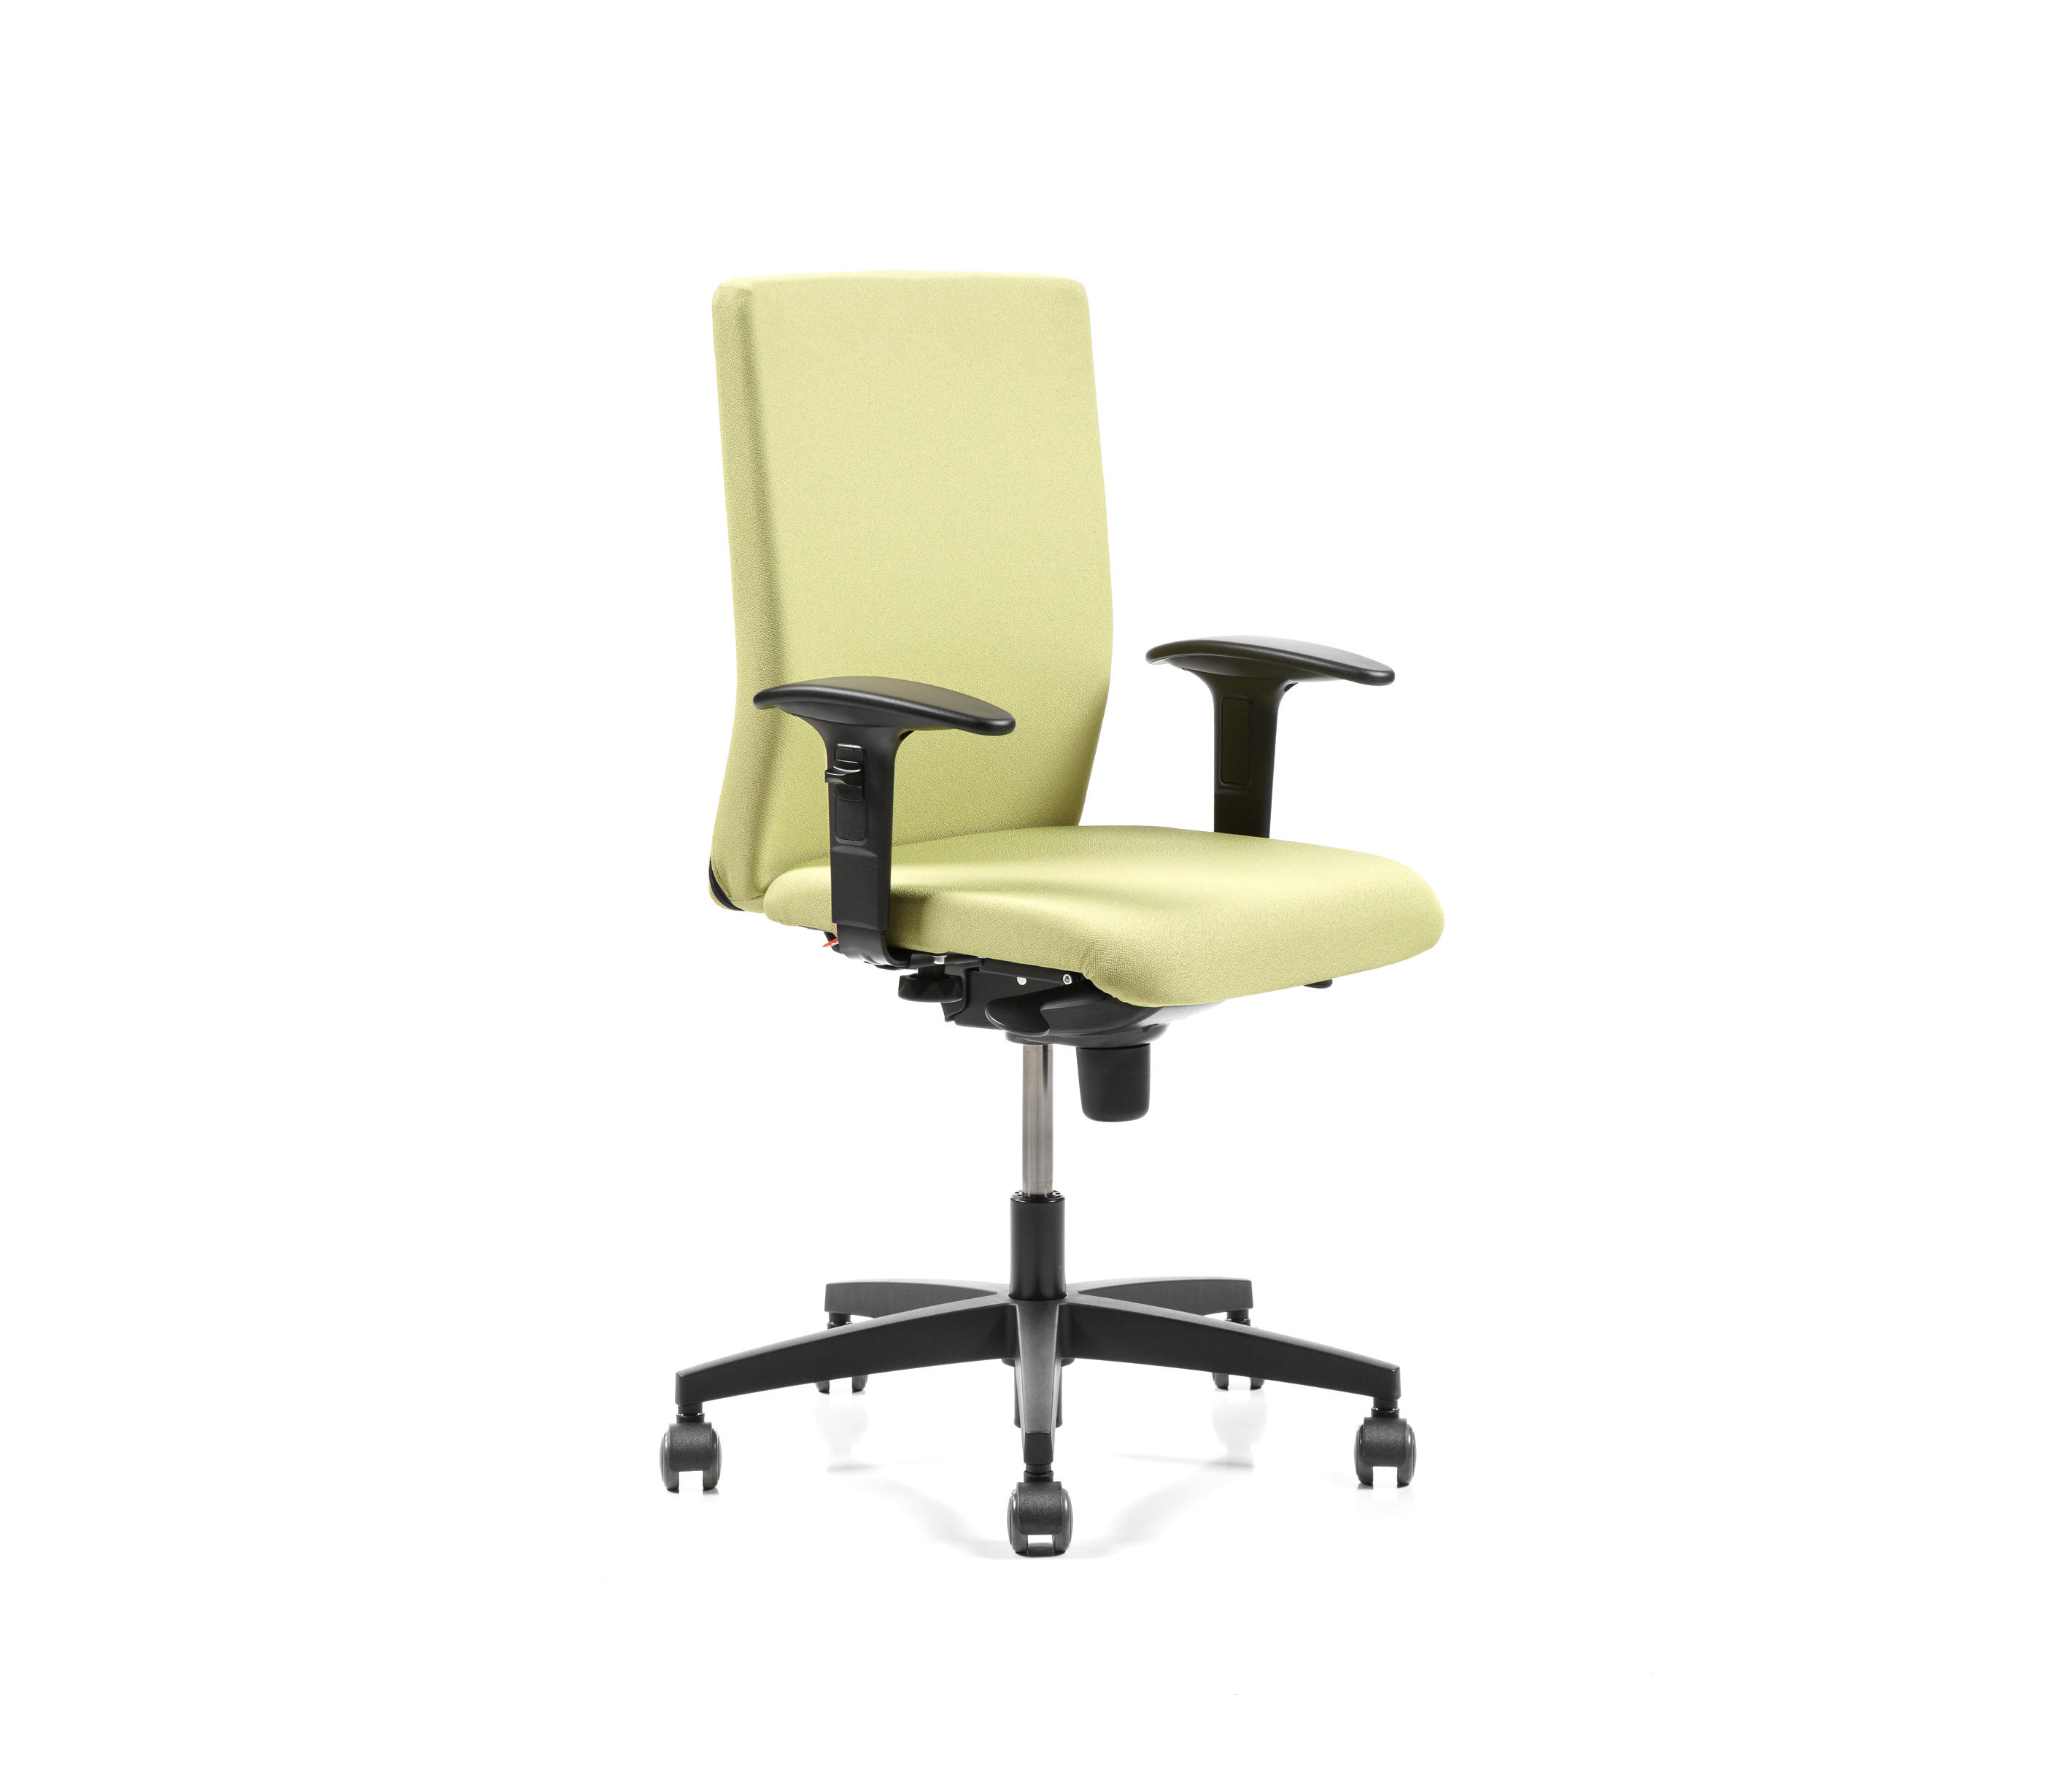 Assure Office Chair